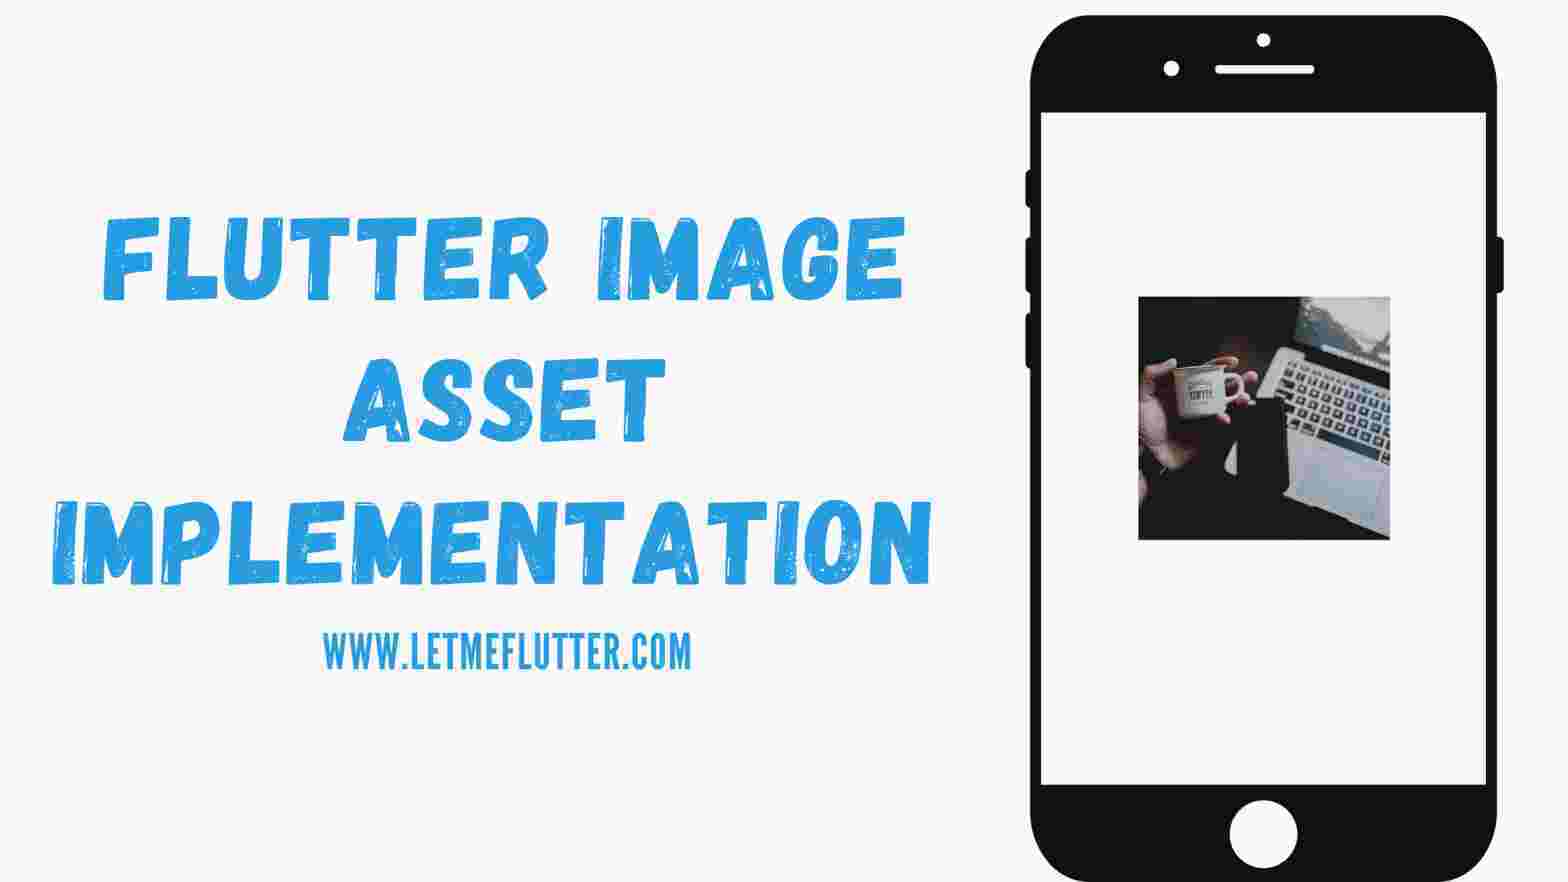 Flutter image asset